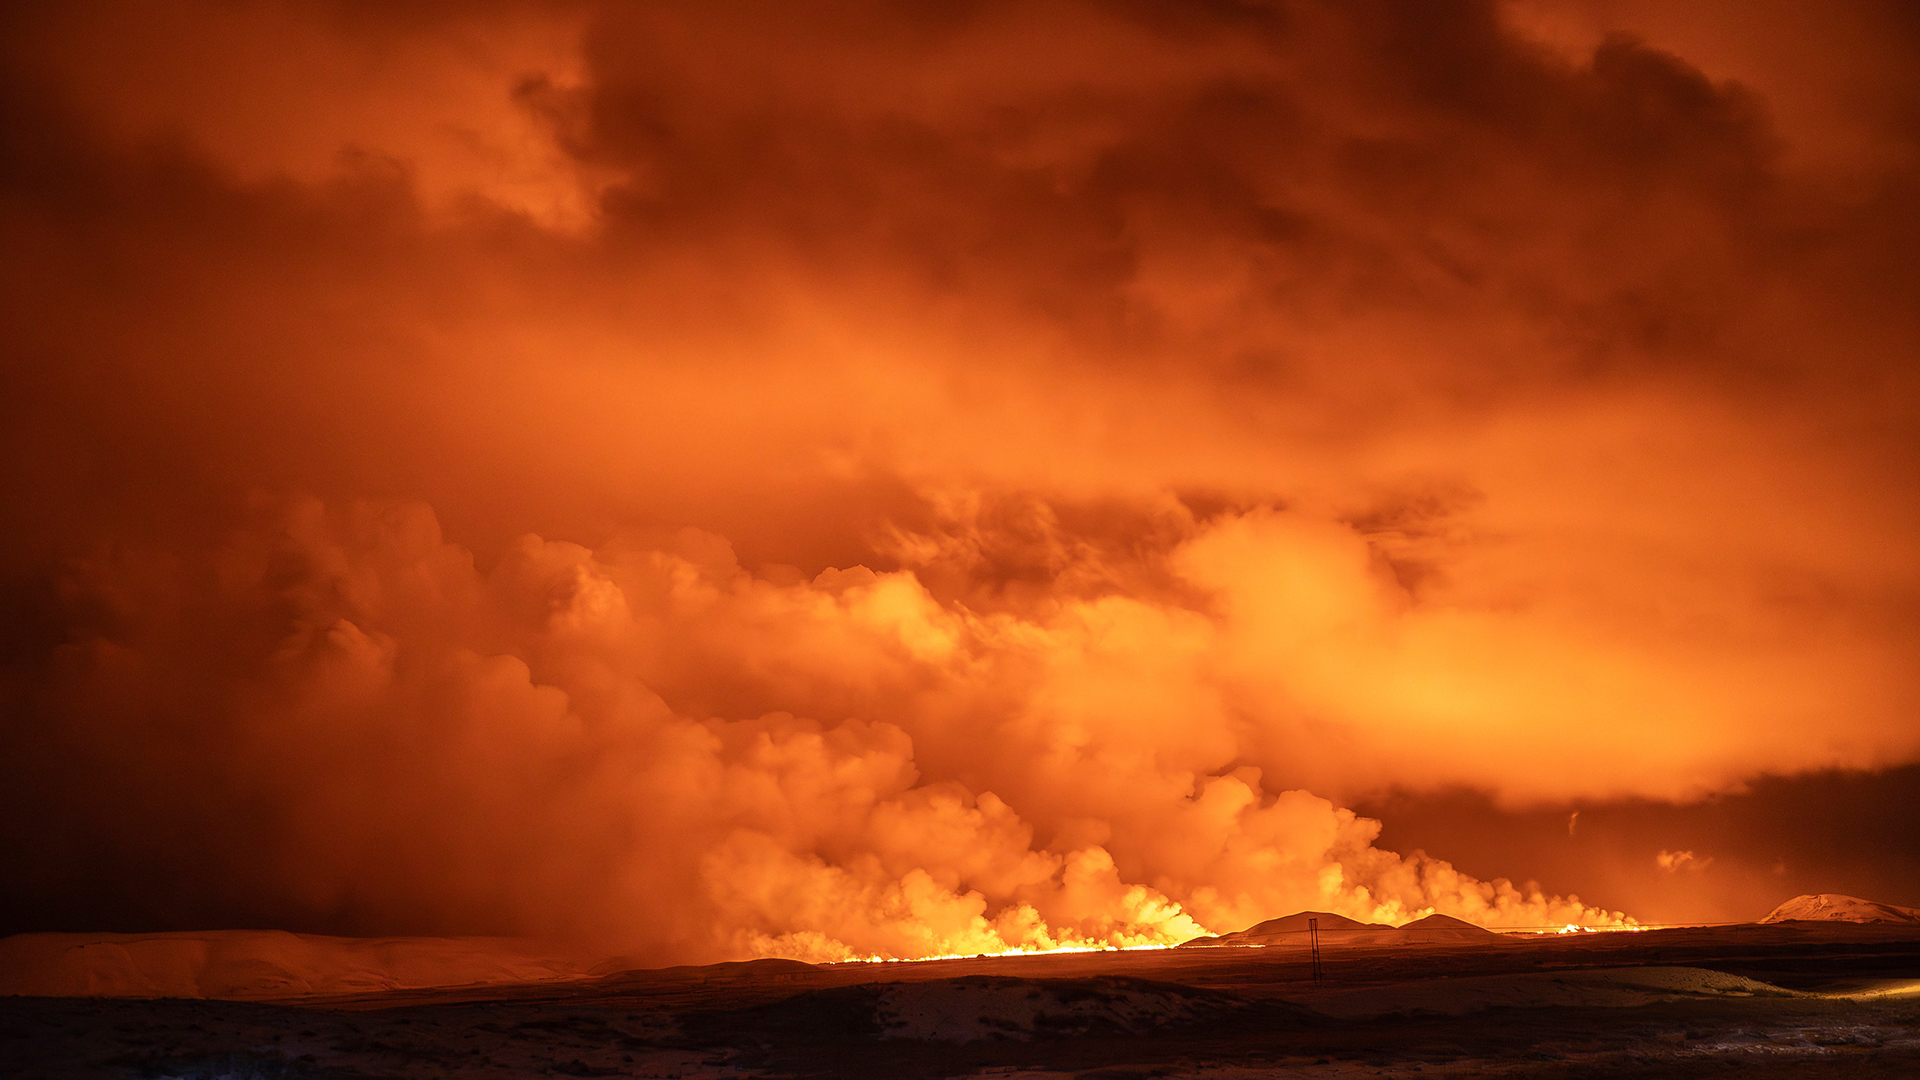 Ein Vulkanausbruch, der den Himmel orange färbt, ist in Grindavik auf der isländischen Halbinsel Reykjanes zu sehen.